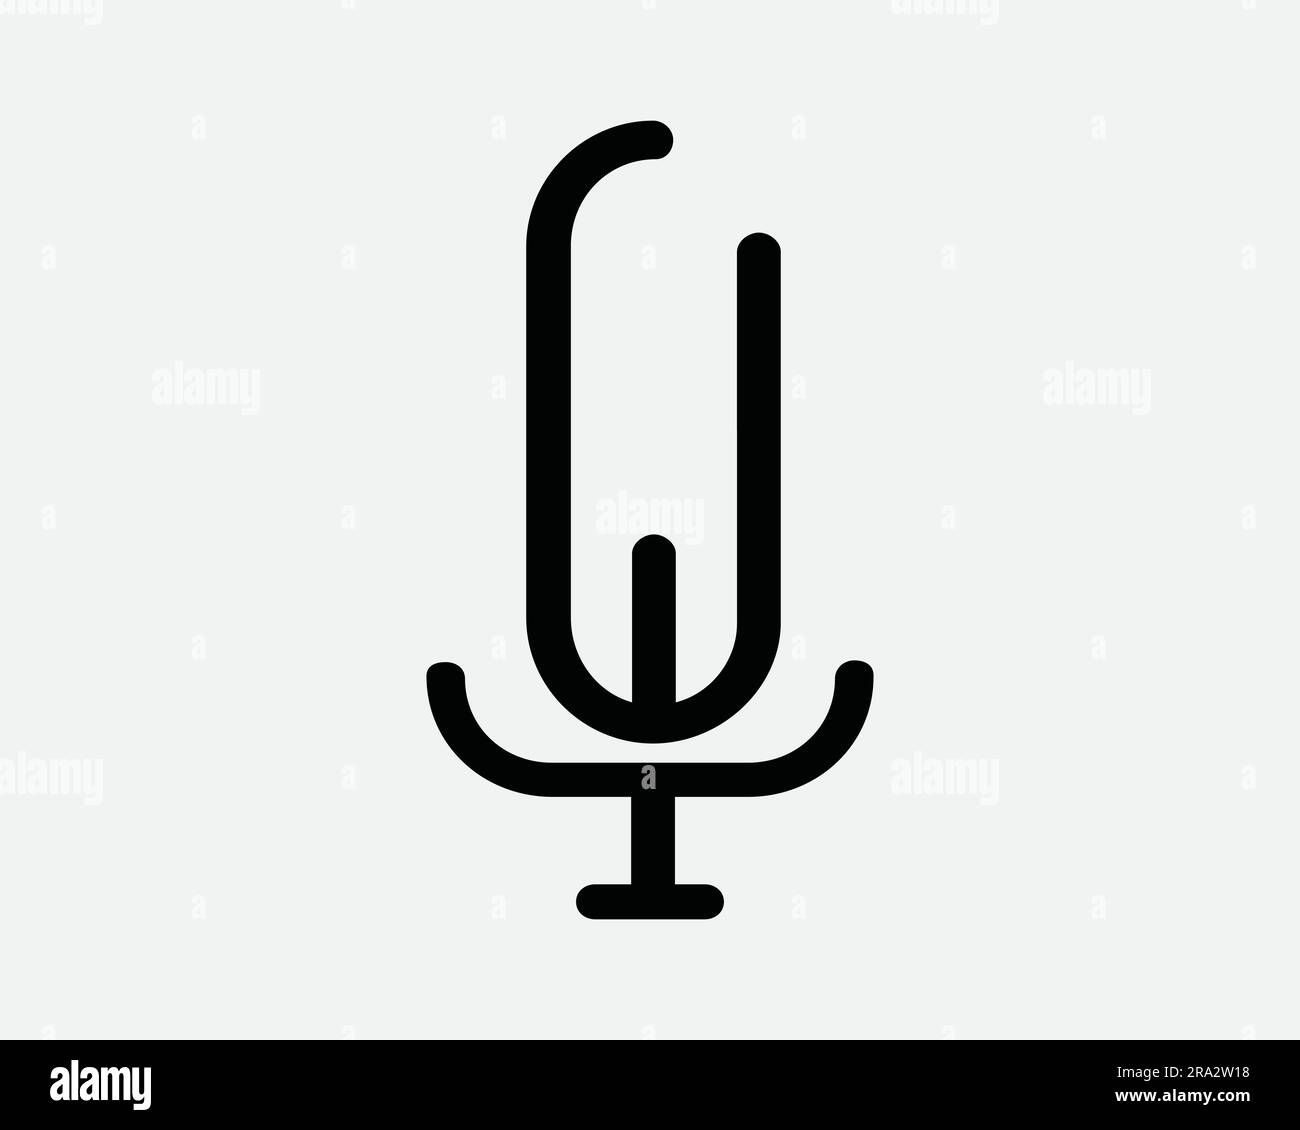 Icône de microphone. MIC Mike Music Podcast enregistrement radio Studio Media son Speech diffusion audio. Noir blanc Clipart graphique symbole signe vecteur EPS Illustration de Vecteur